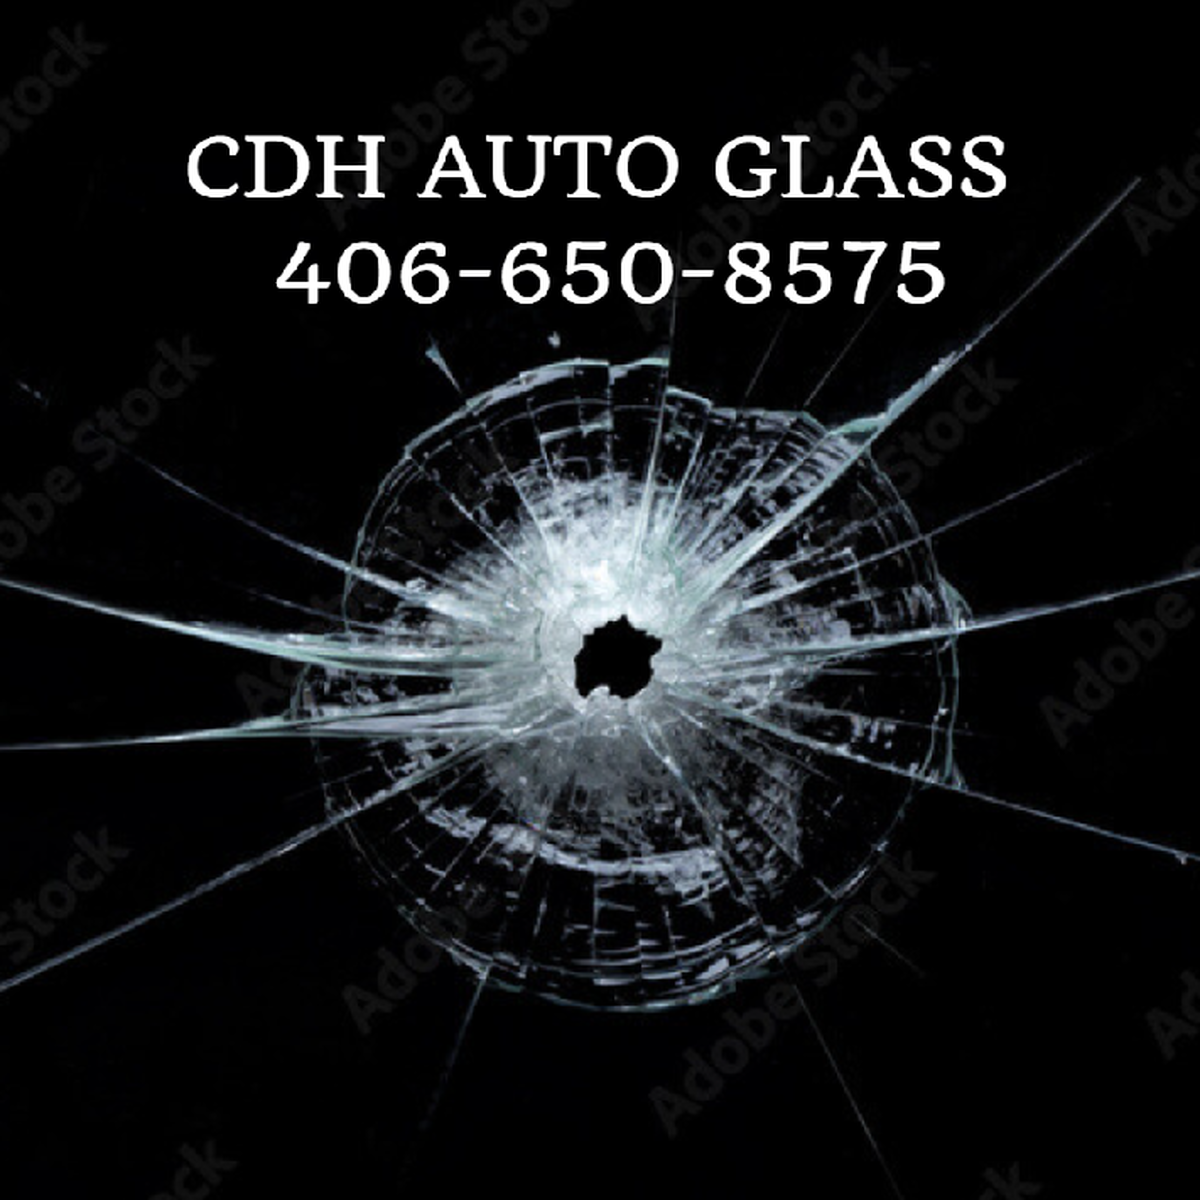 CDH Auto Glass